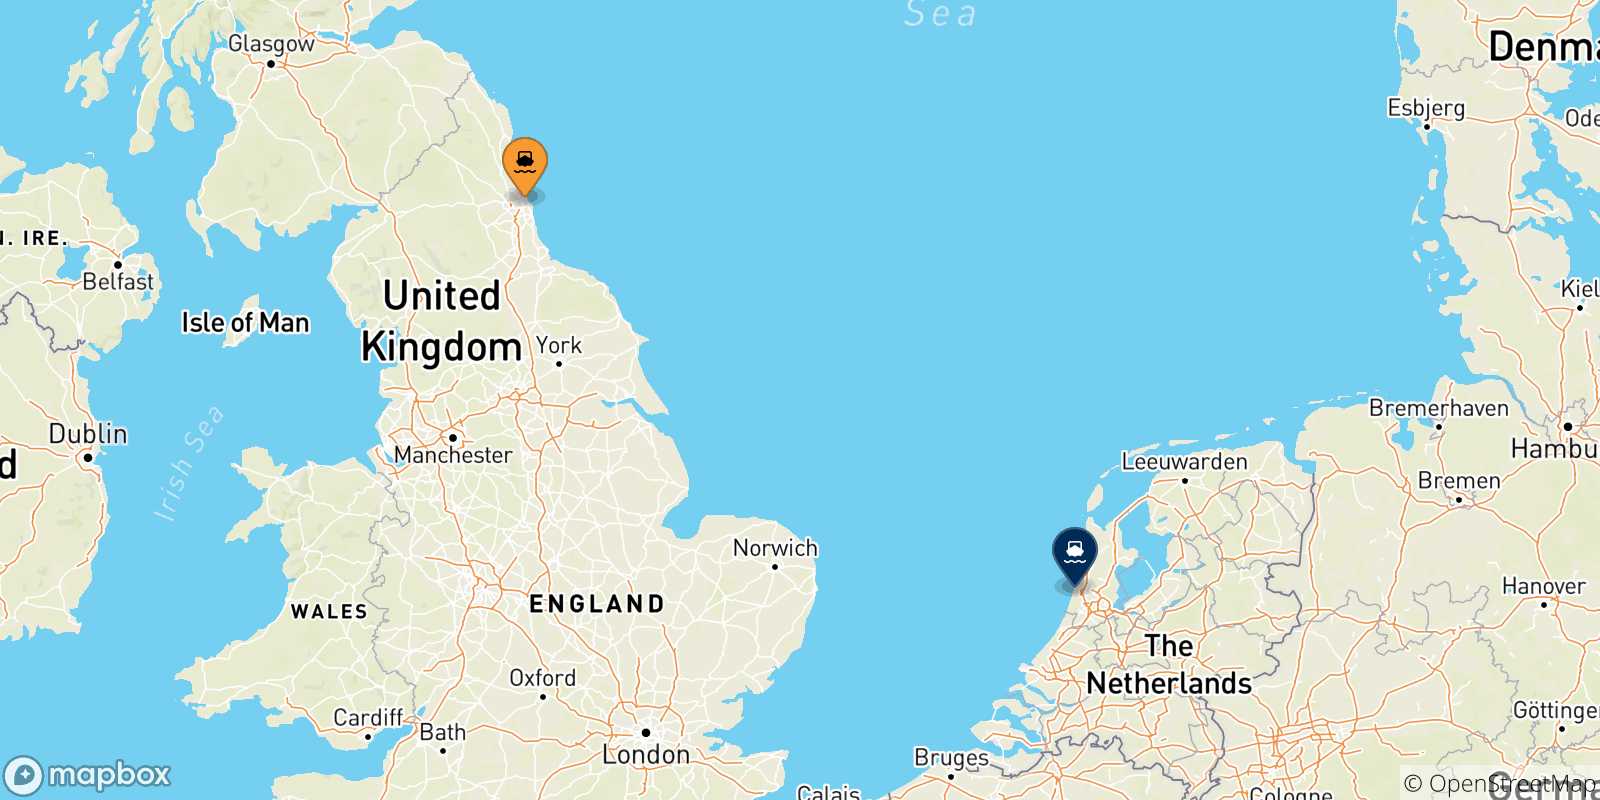 Mappa delle possibili rotte tra il Regno Unito e l'Olanda